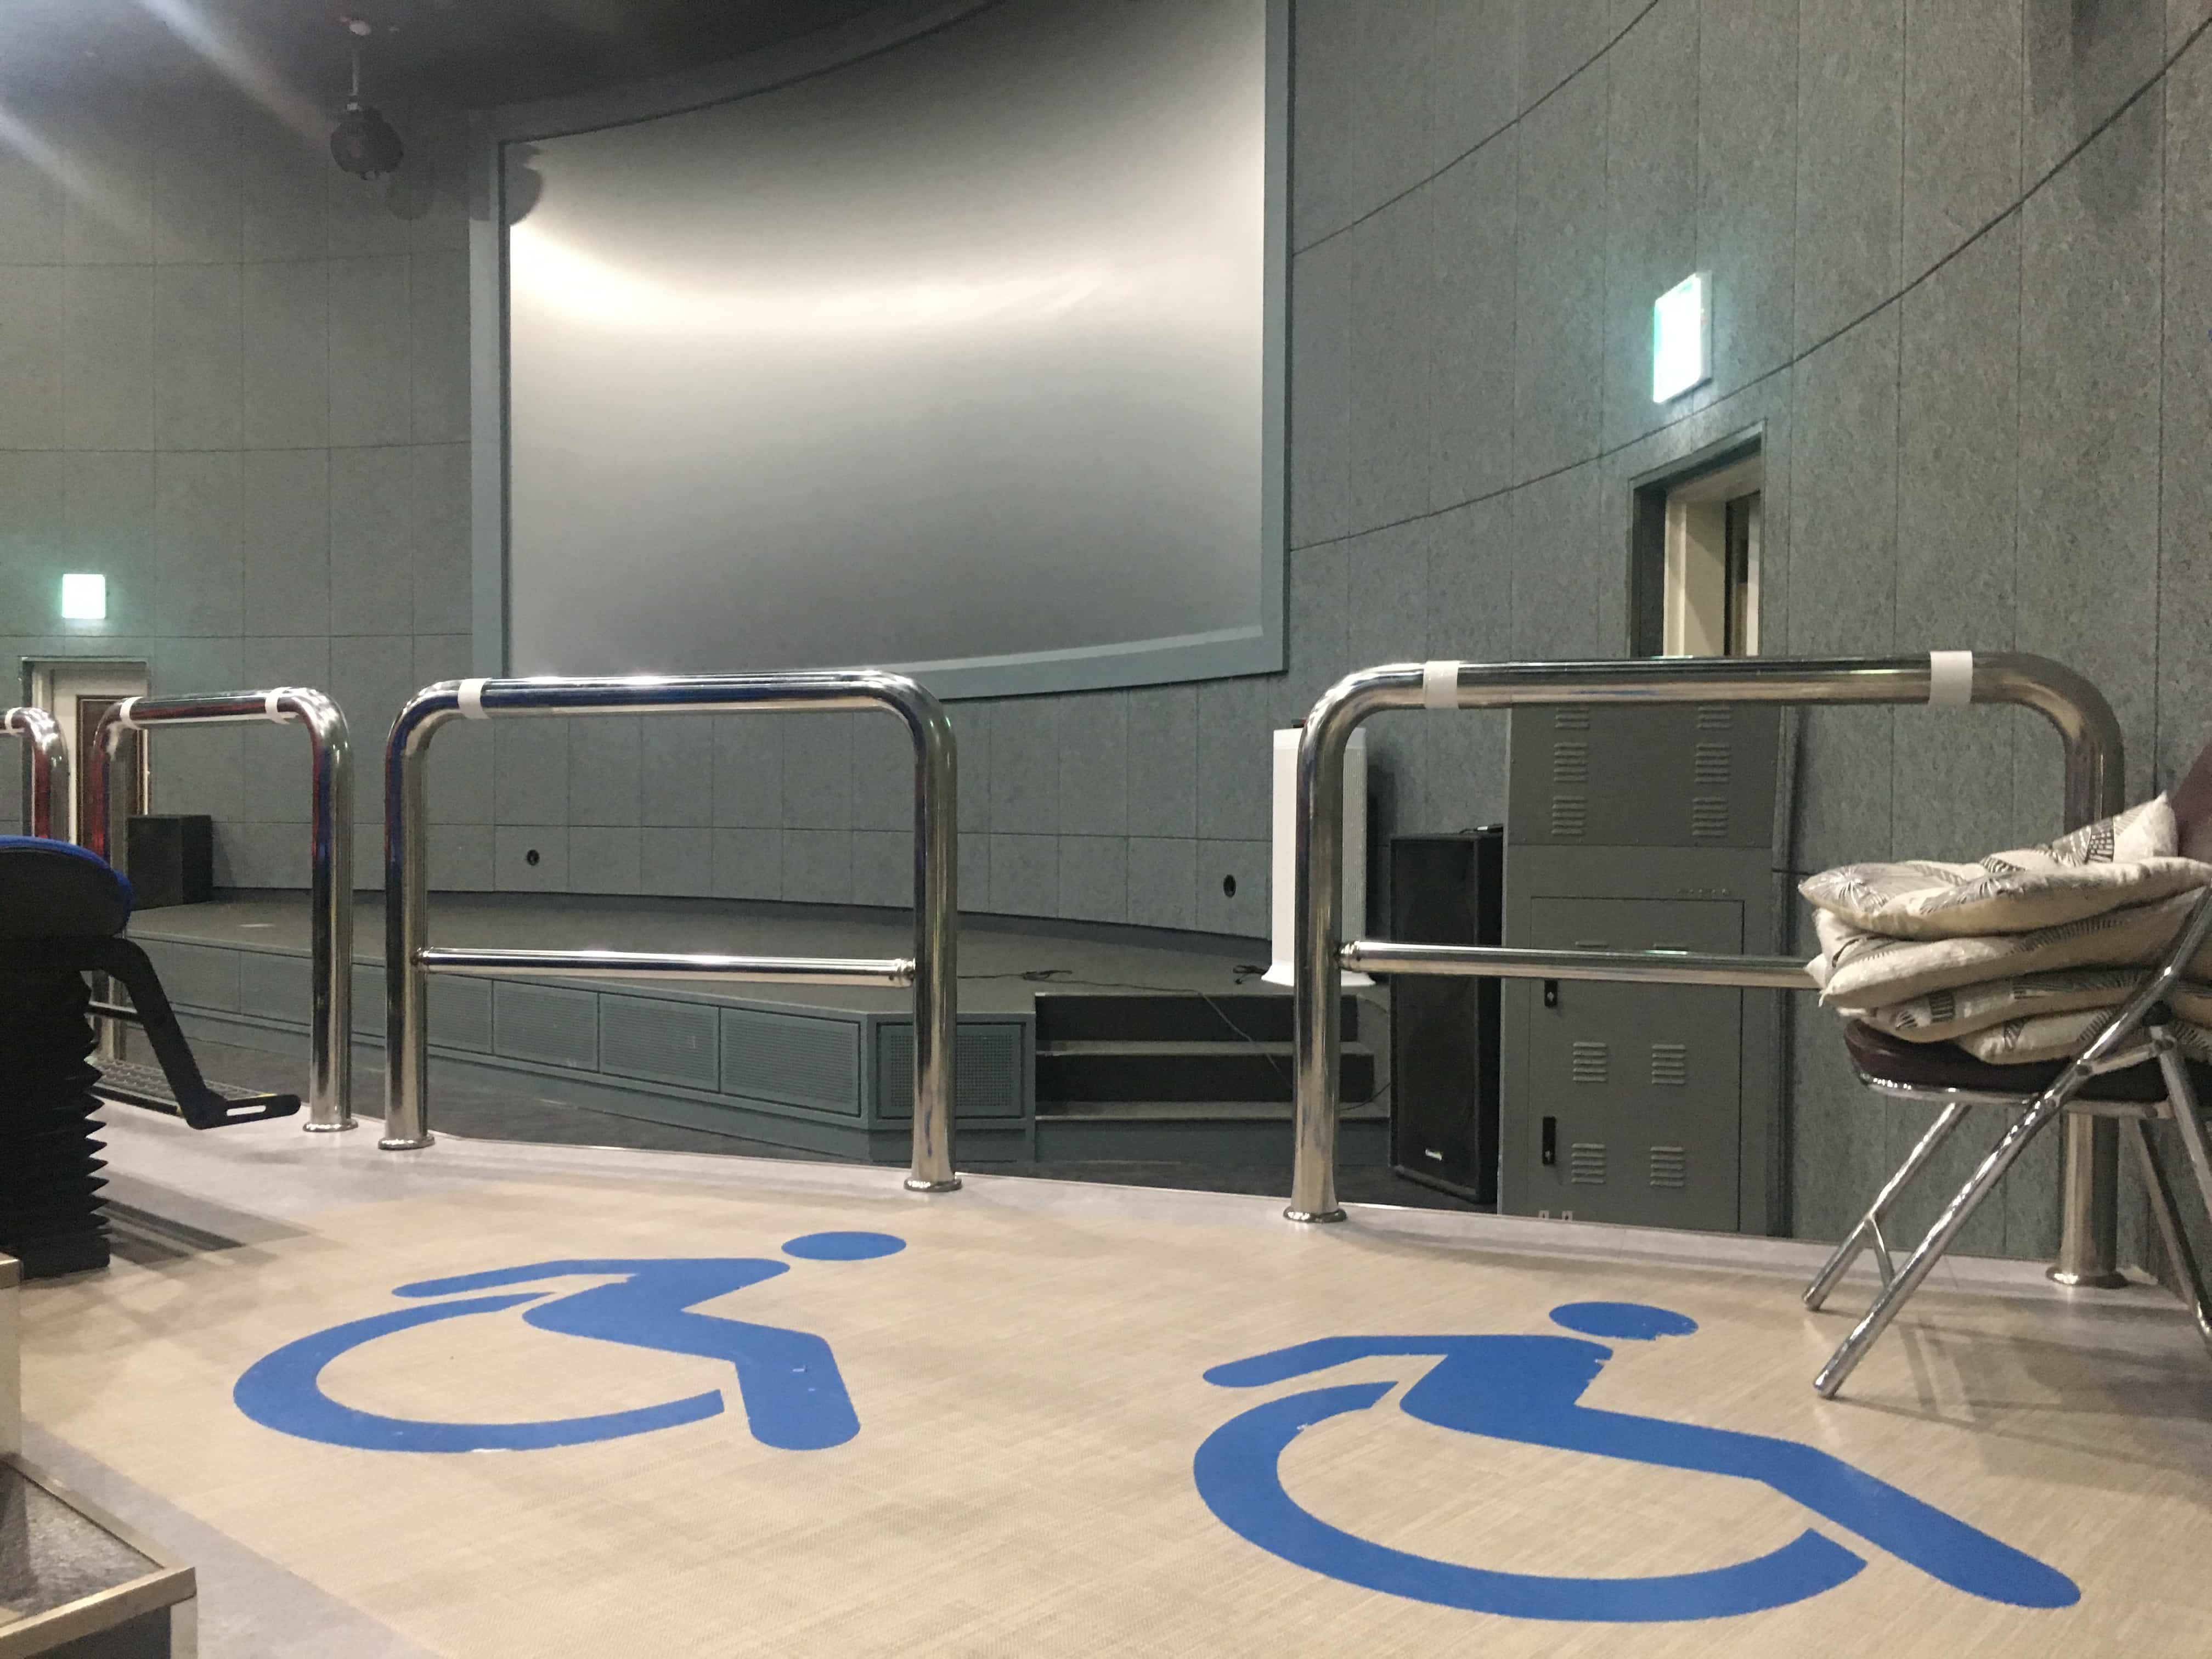 보라매안전체험관1 : 보라매안전체험관 체험장 내부의 휠체어 전용 구역